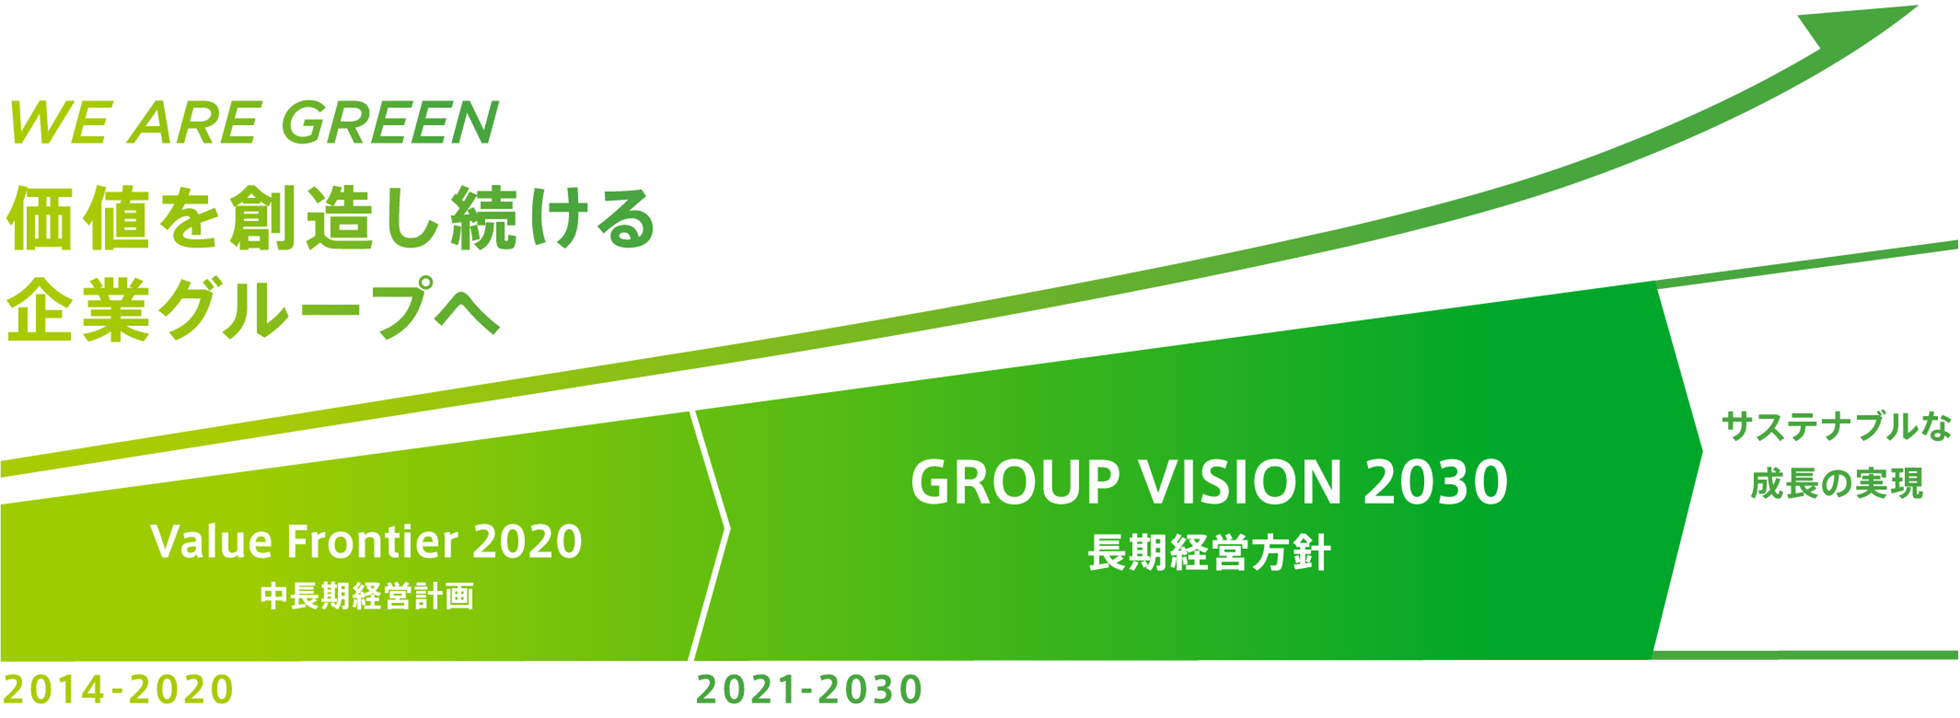 WE ARE GREEN　価値を創造し続ける企業グループへ 2014〜2020年：中期経営計画、2021〜2030年：長期経営計画を行い、サステナブルな成長の実現を目指します。